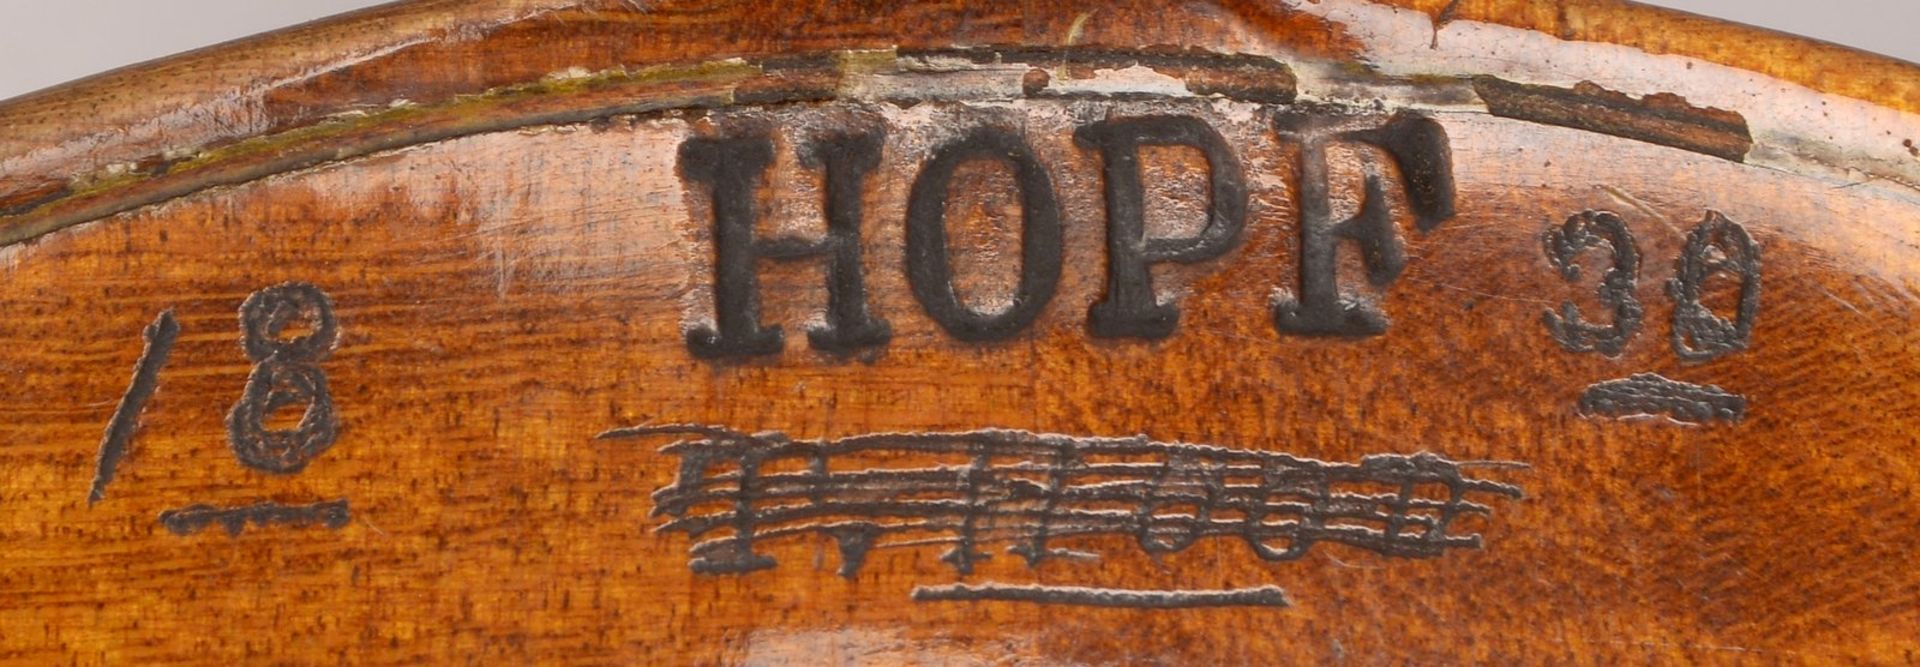 Hopf/Klingenthal, alte Geige, r&uuml;ckseitig gemarkt und datiert &#039;1830&#039;/mit Brandstempel, - Image 3 of 3